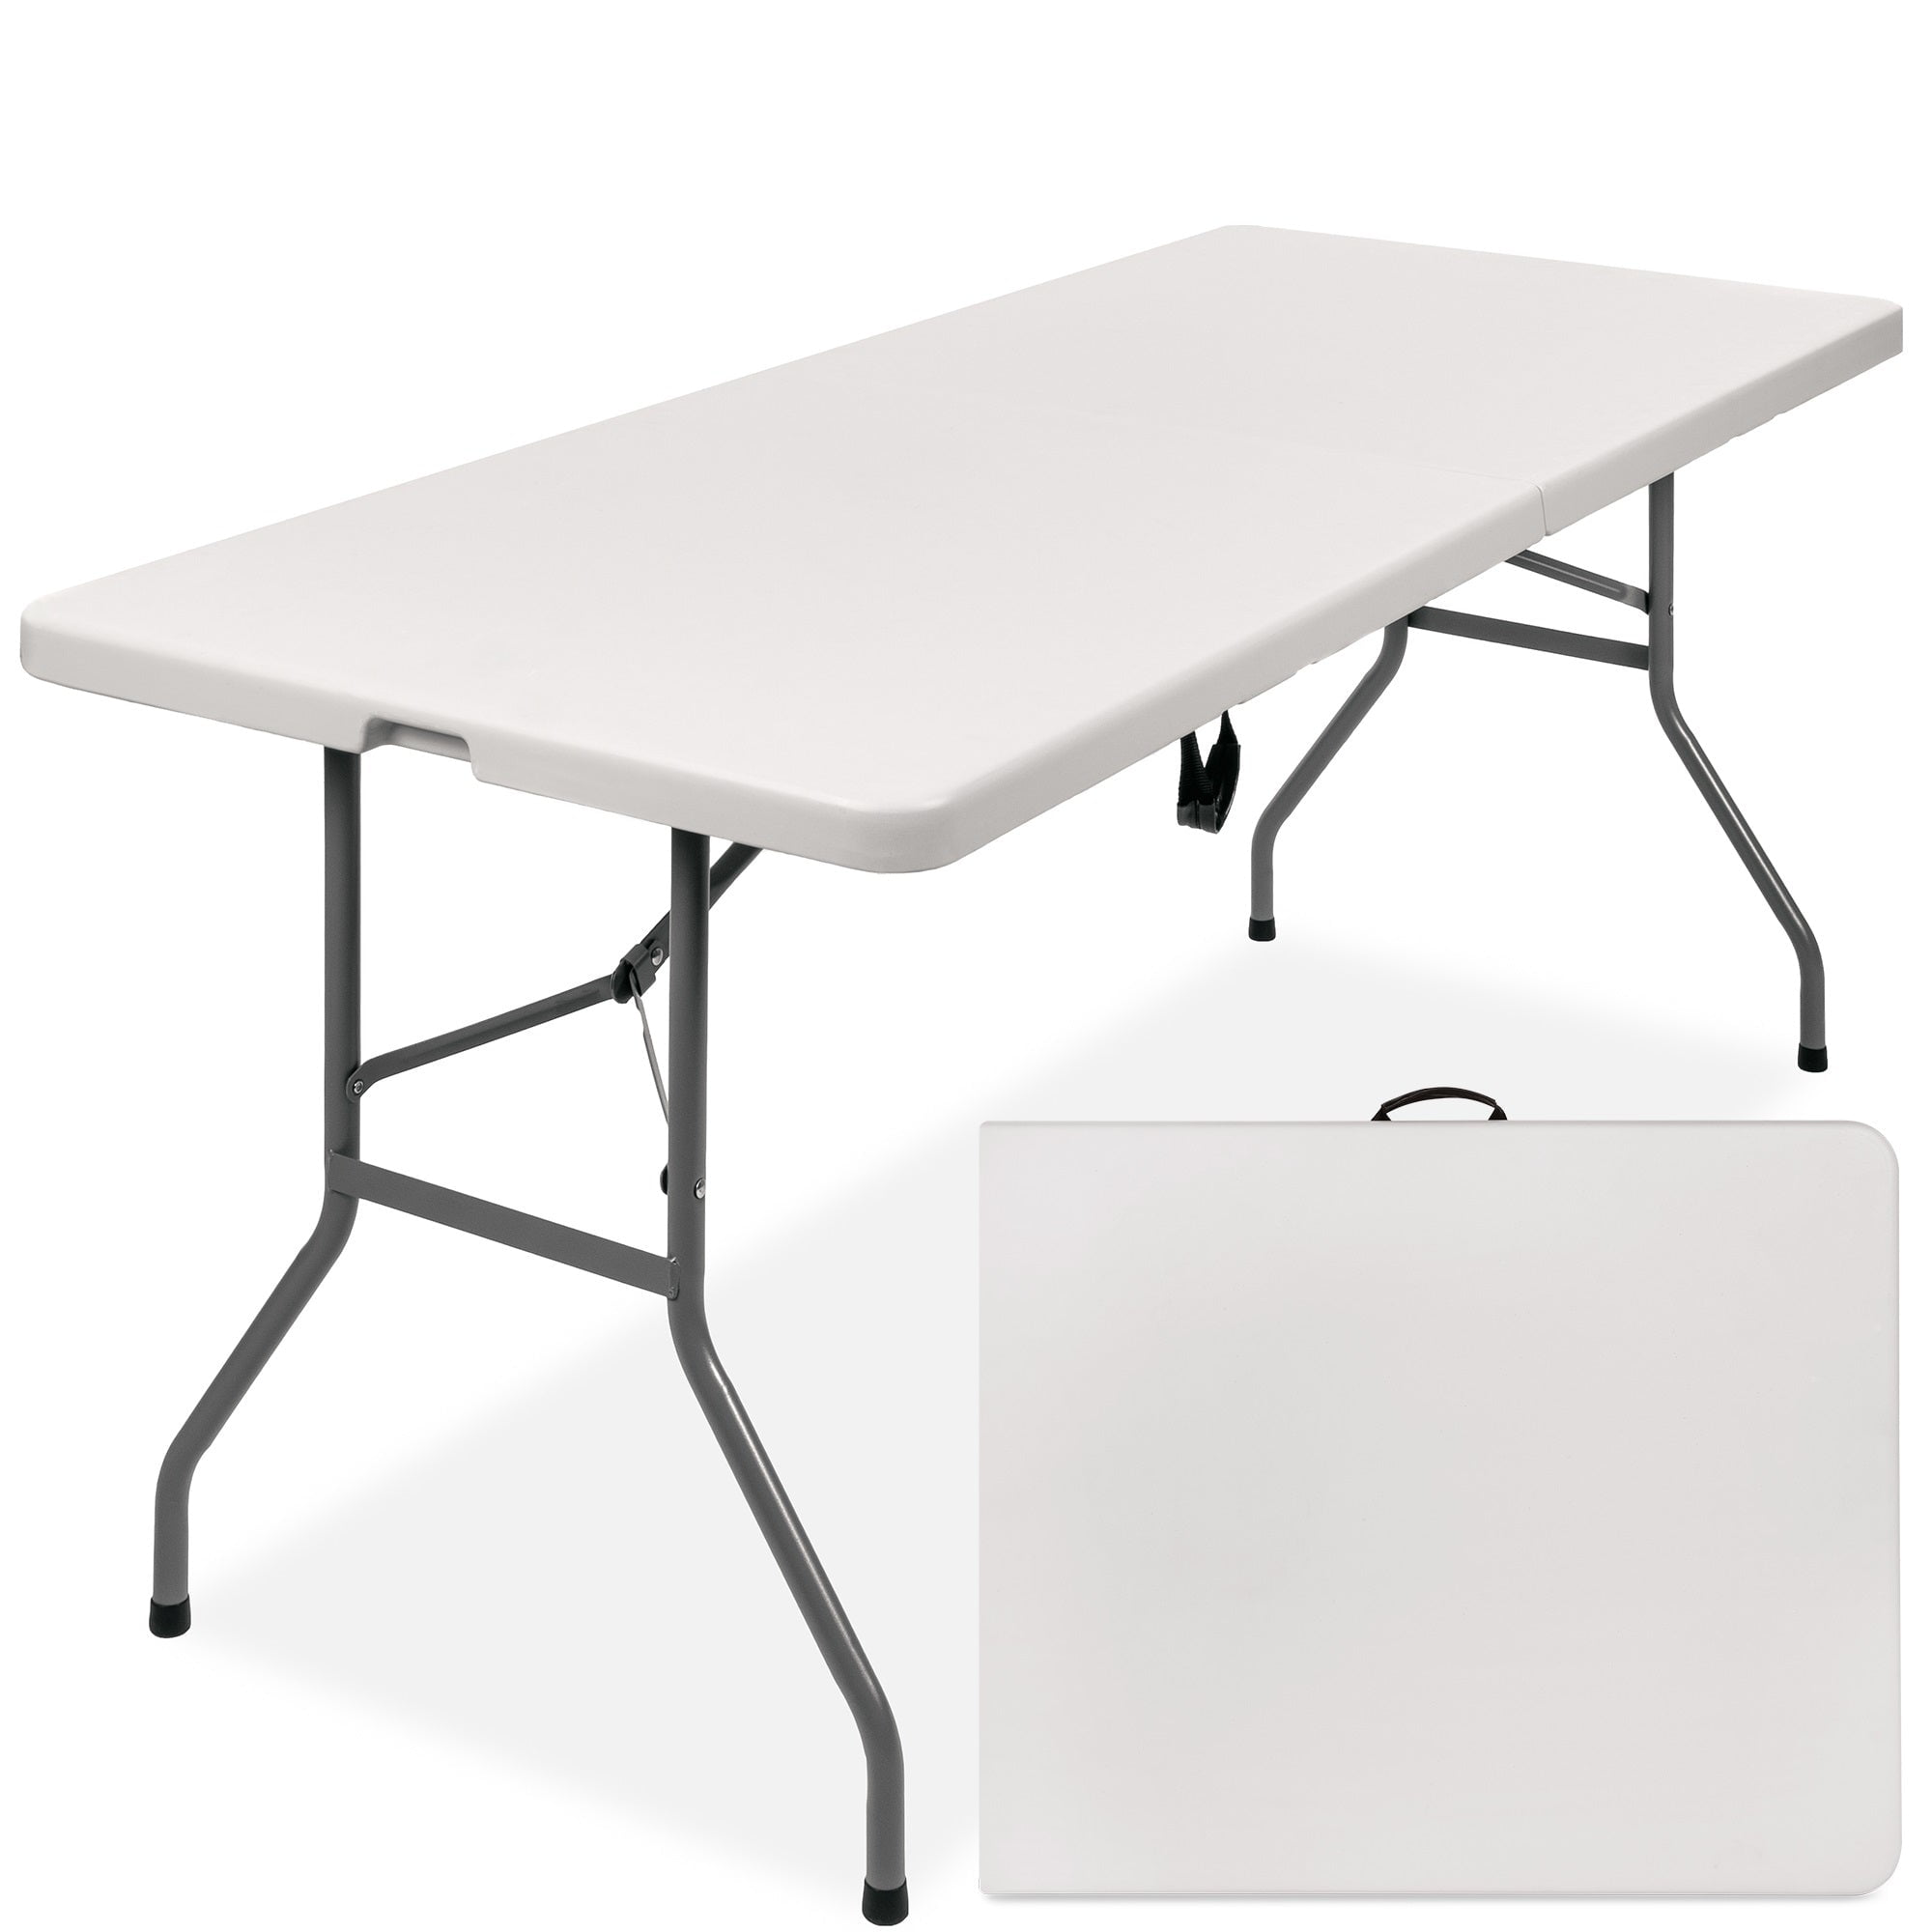 Aluminum Folding Chair Table